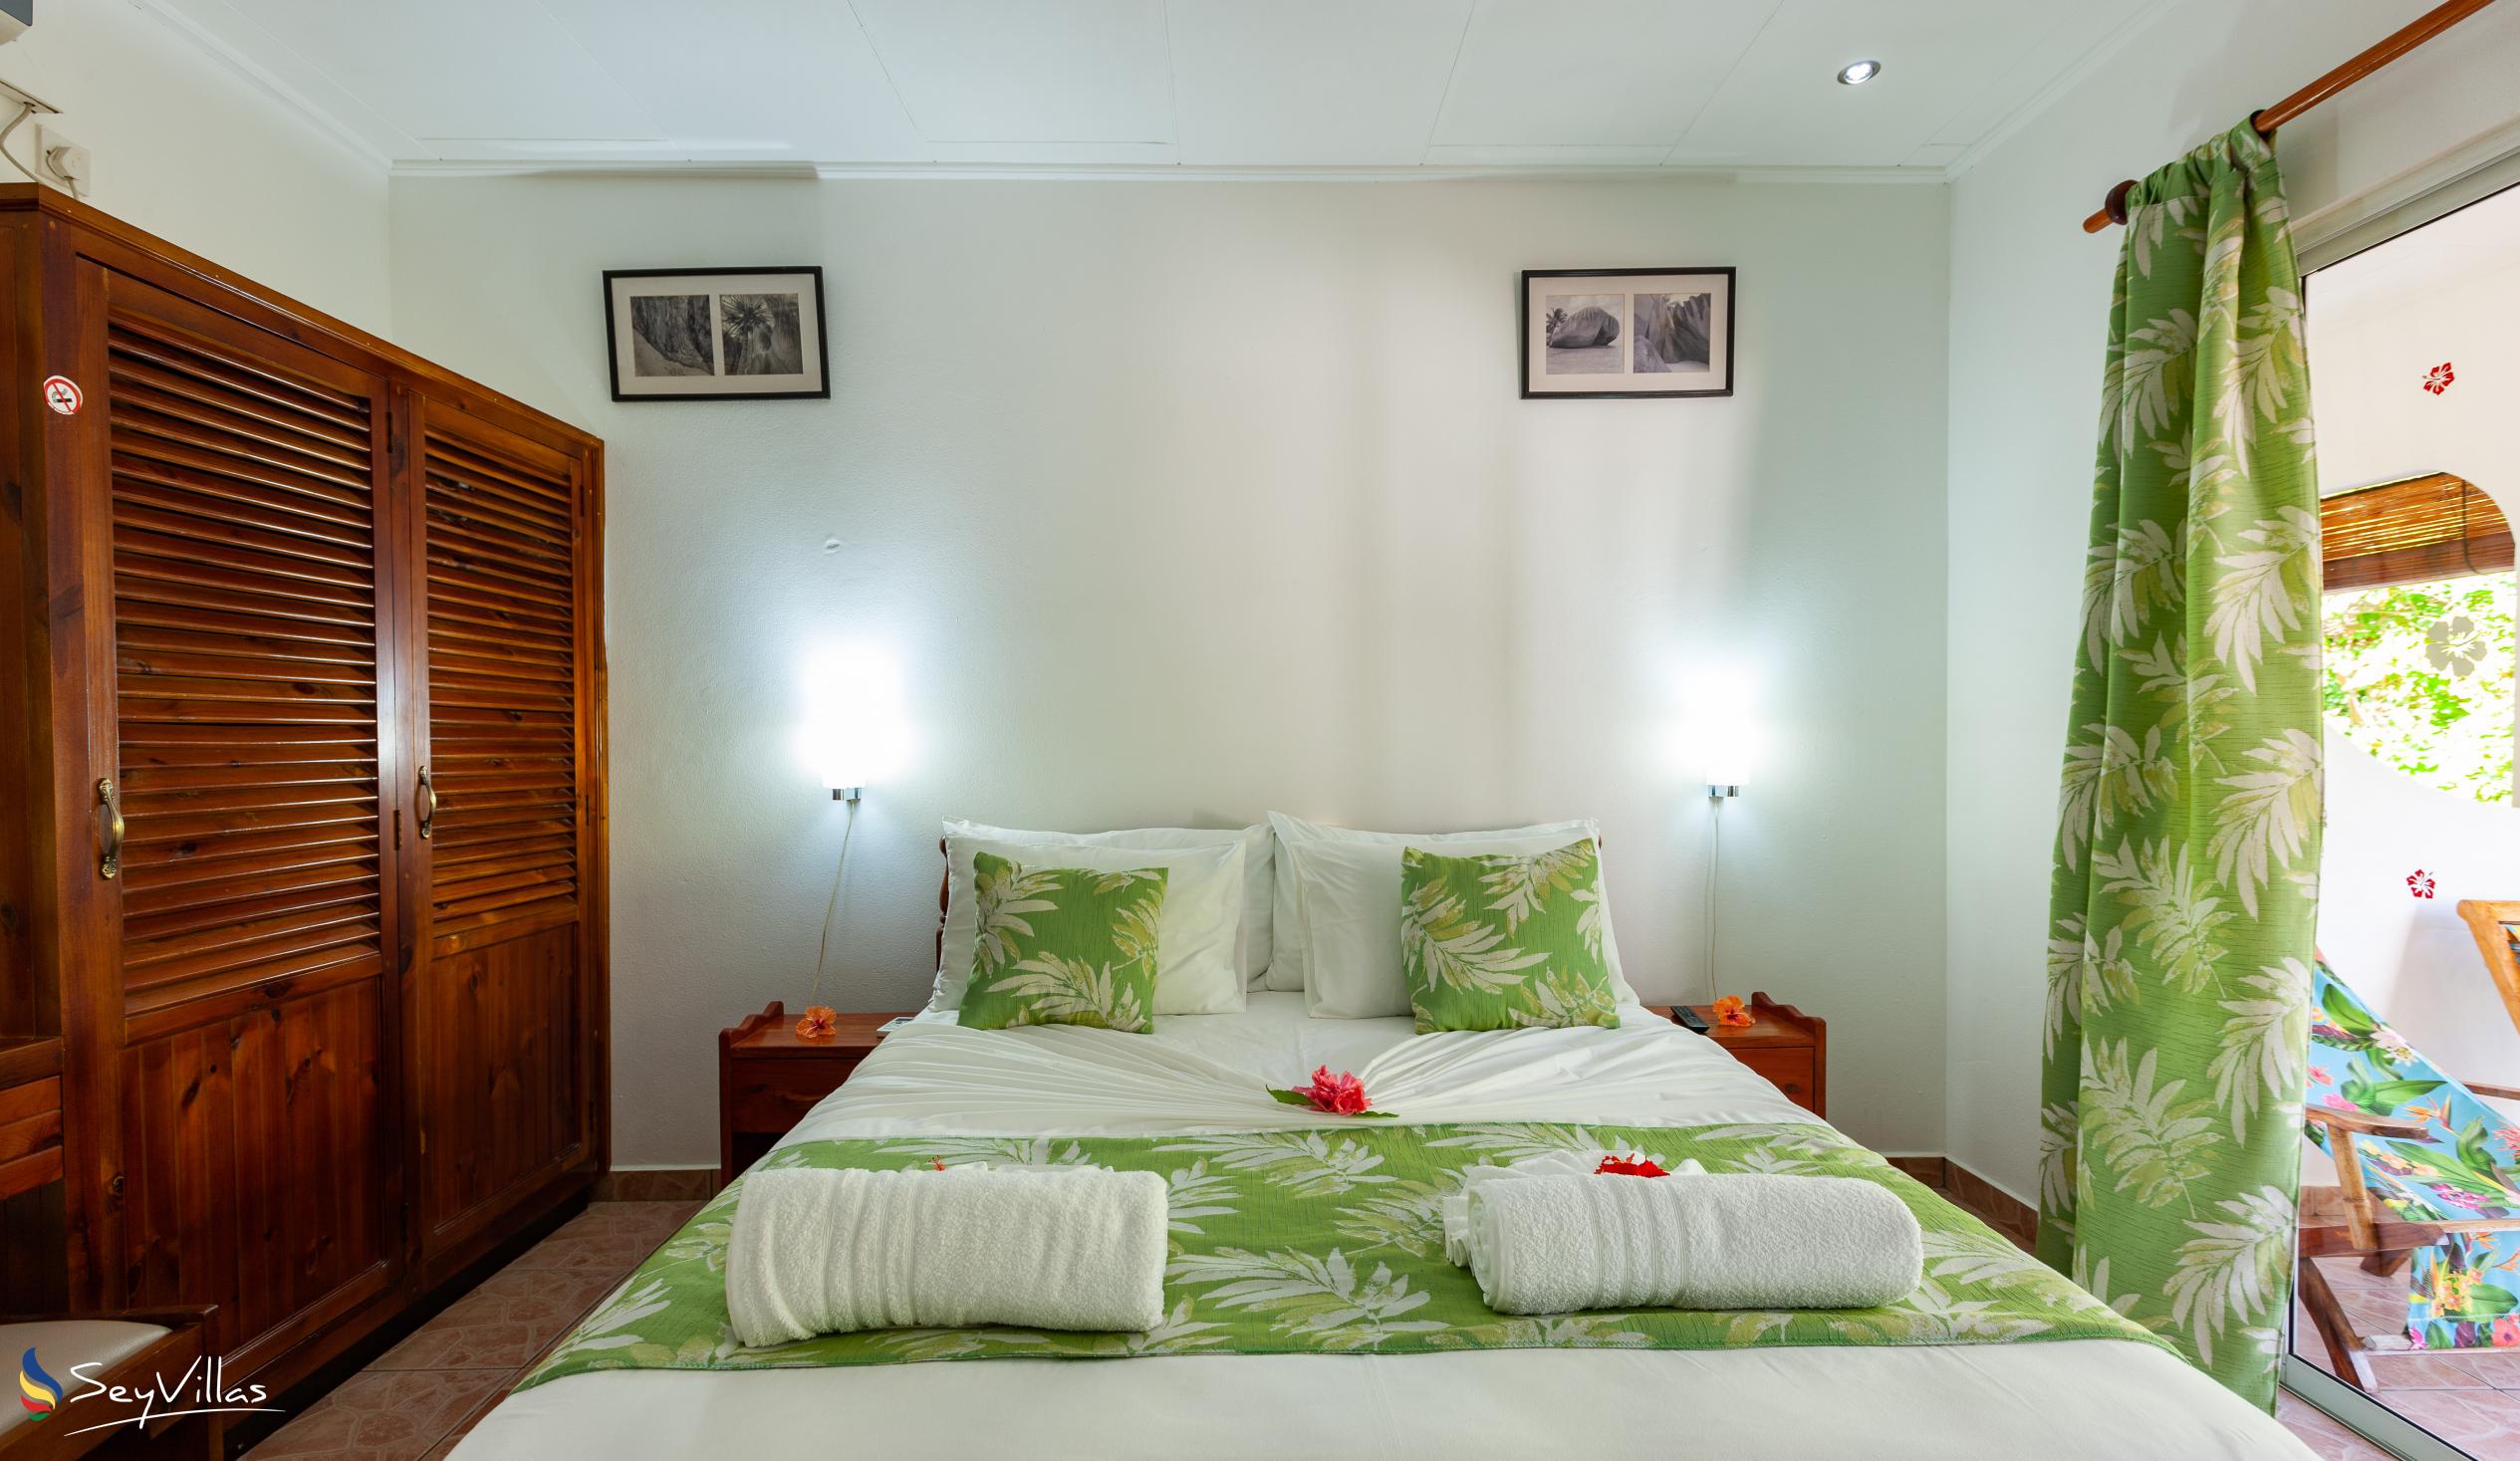 Photo 55: Pension Hibiscus - Maison Eliza - Standard Room - La Digue (Seychelles)